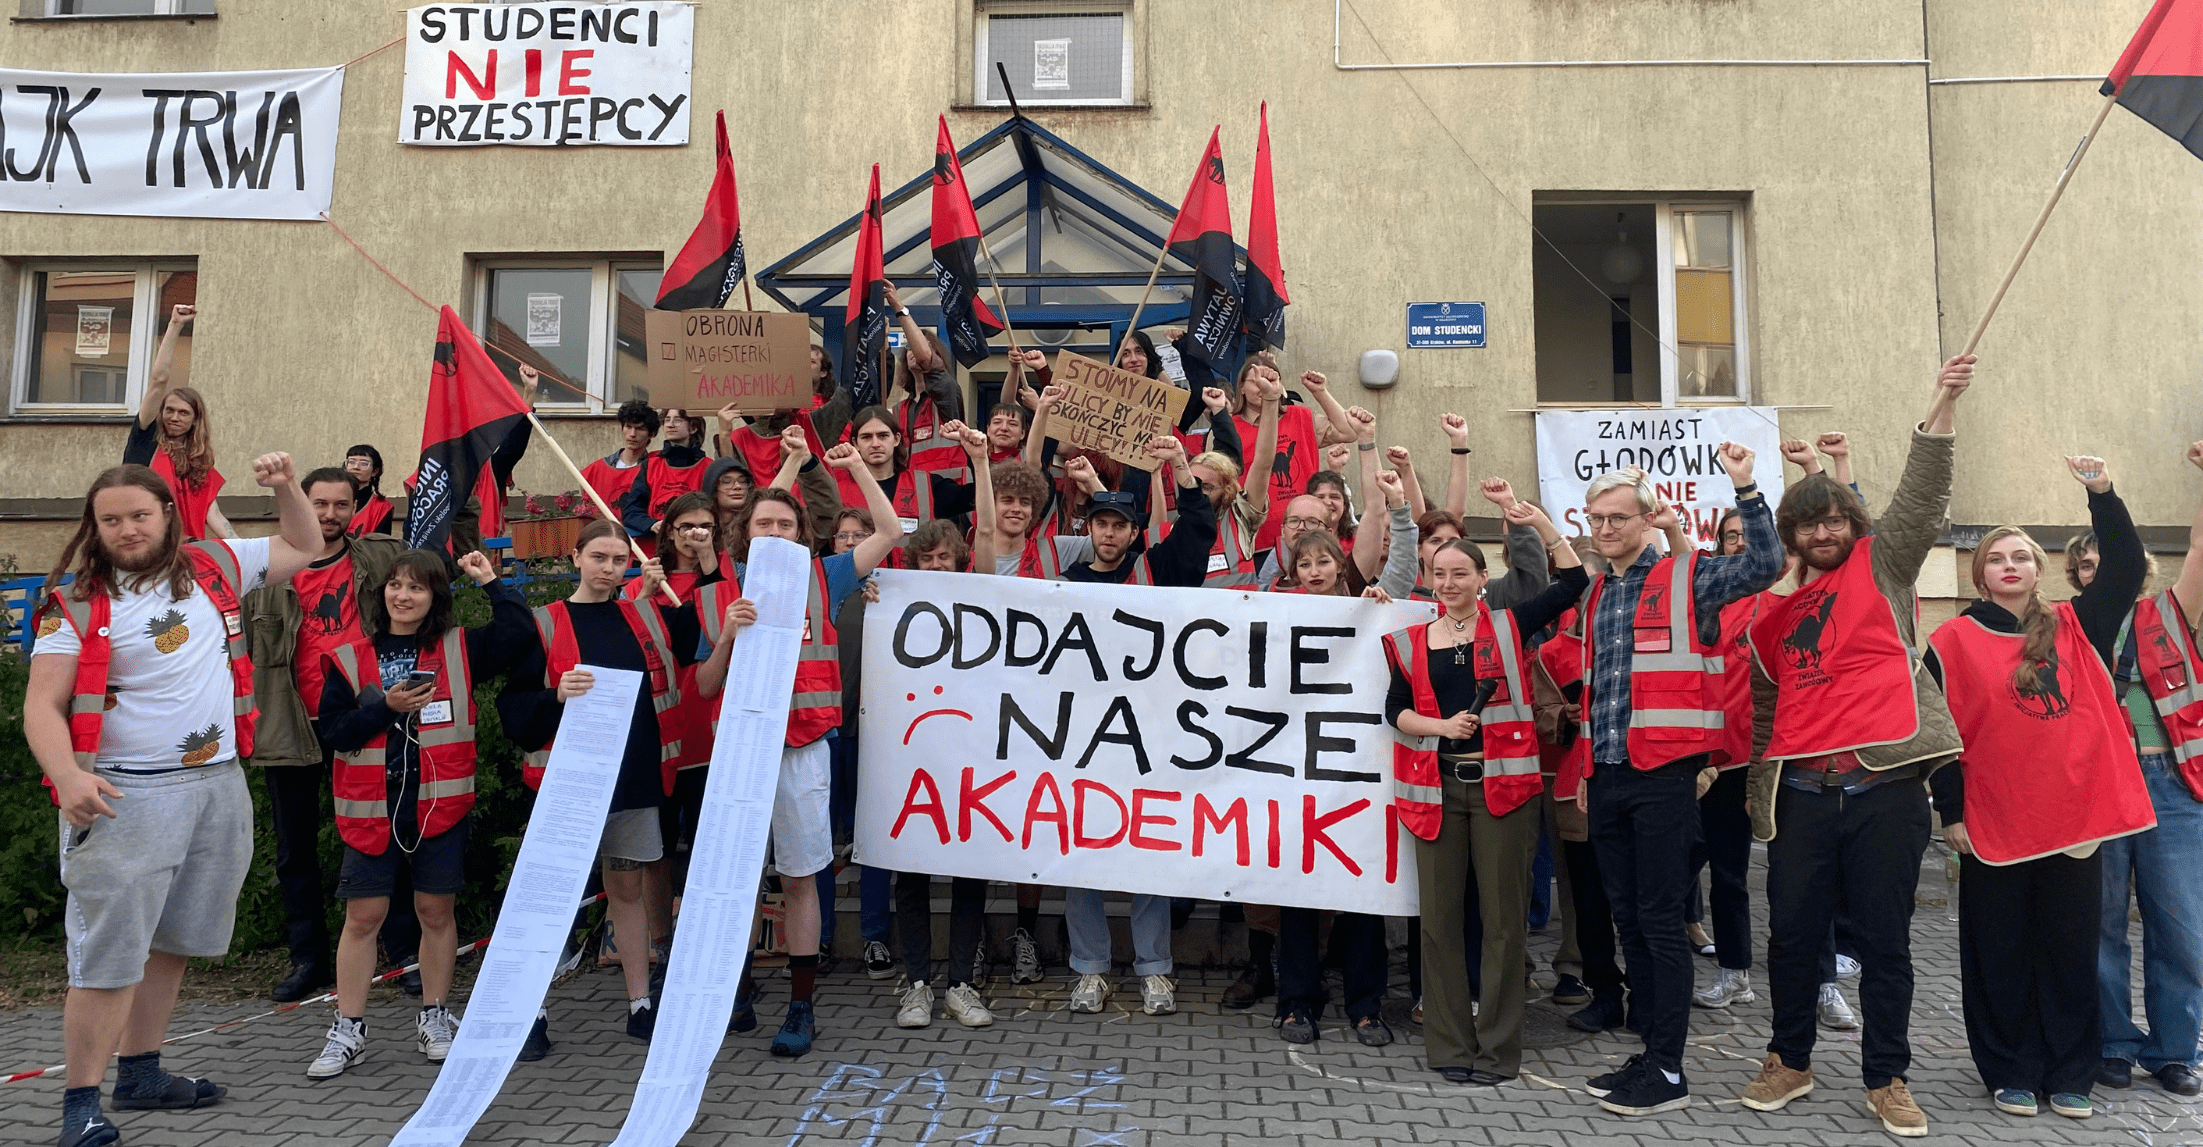 Zdjęcie przedstawiające osoby studiujące, które protestują pod Domem Studenckim Kamionka w Krakowie. Mają na sobie czerwone kamizelki. Kilka osób w rękach trzyma flagę Ogólnopolskiego Związku Zawodowego „Inicjatywa Pracownicza”. Dwie osoby trzymają w rękach długie kartki, które opadają na ziemię. W centrum kilka osób trzyma plakat z napisem: „Oddajcie nasze akademiki”.